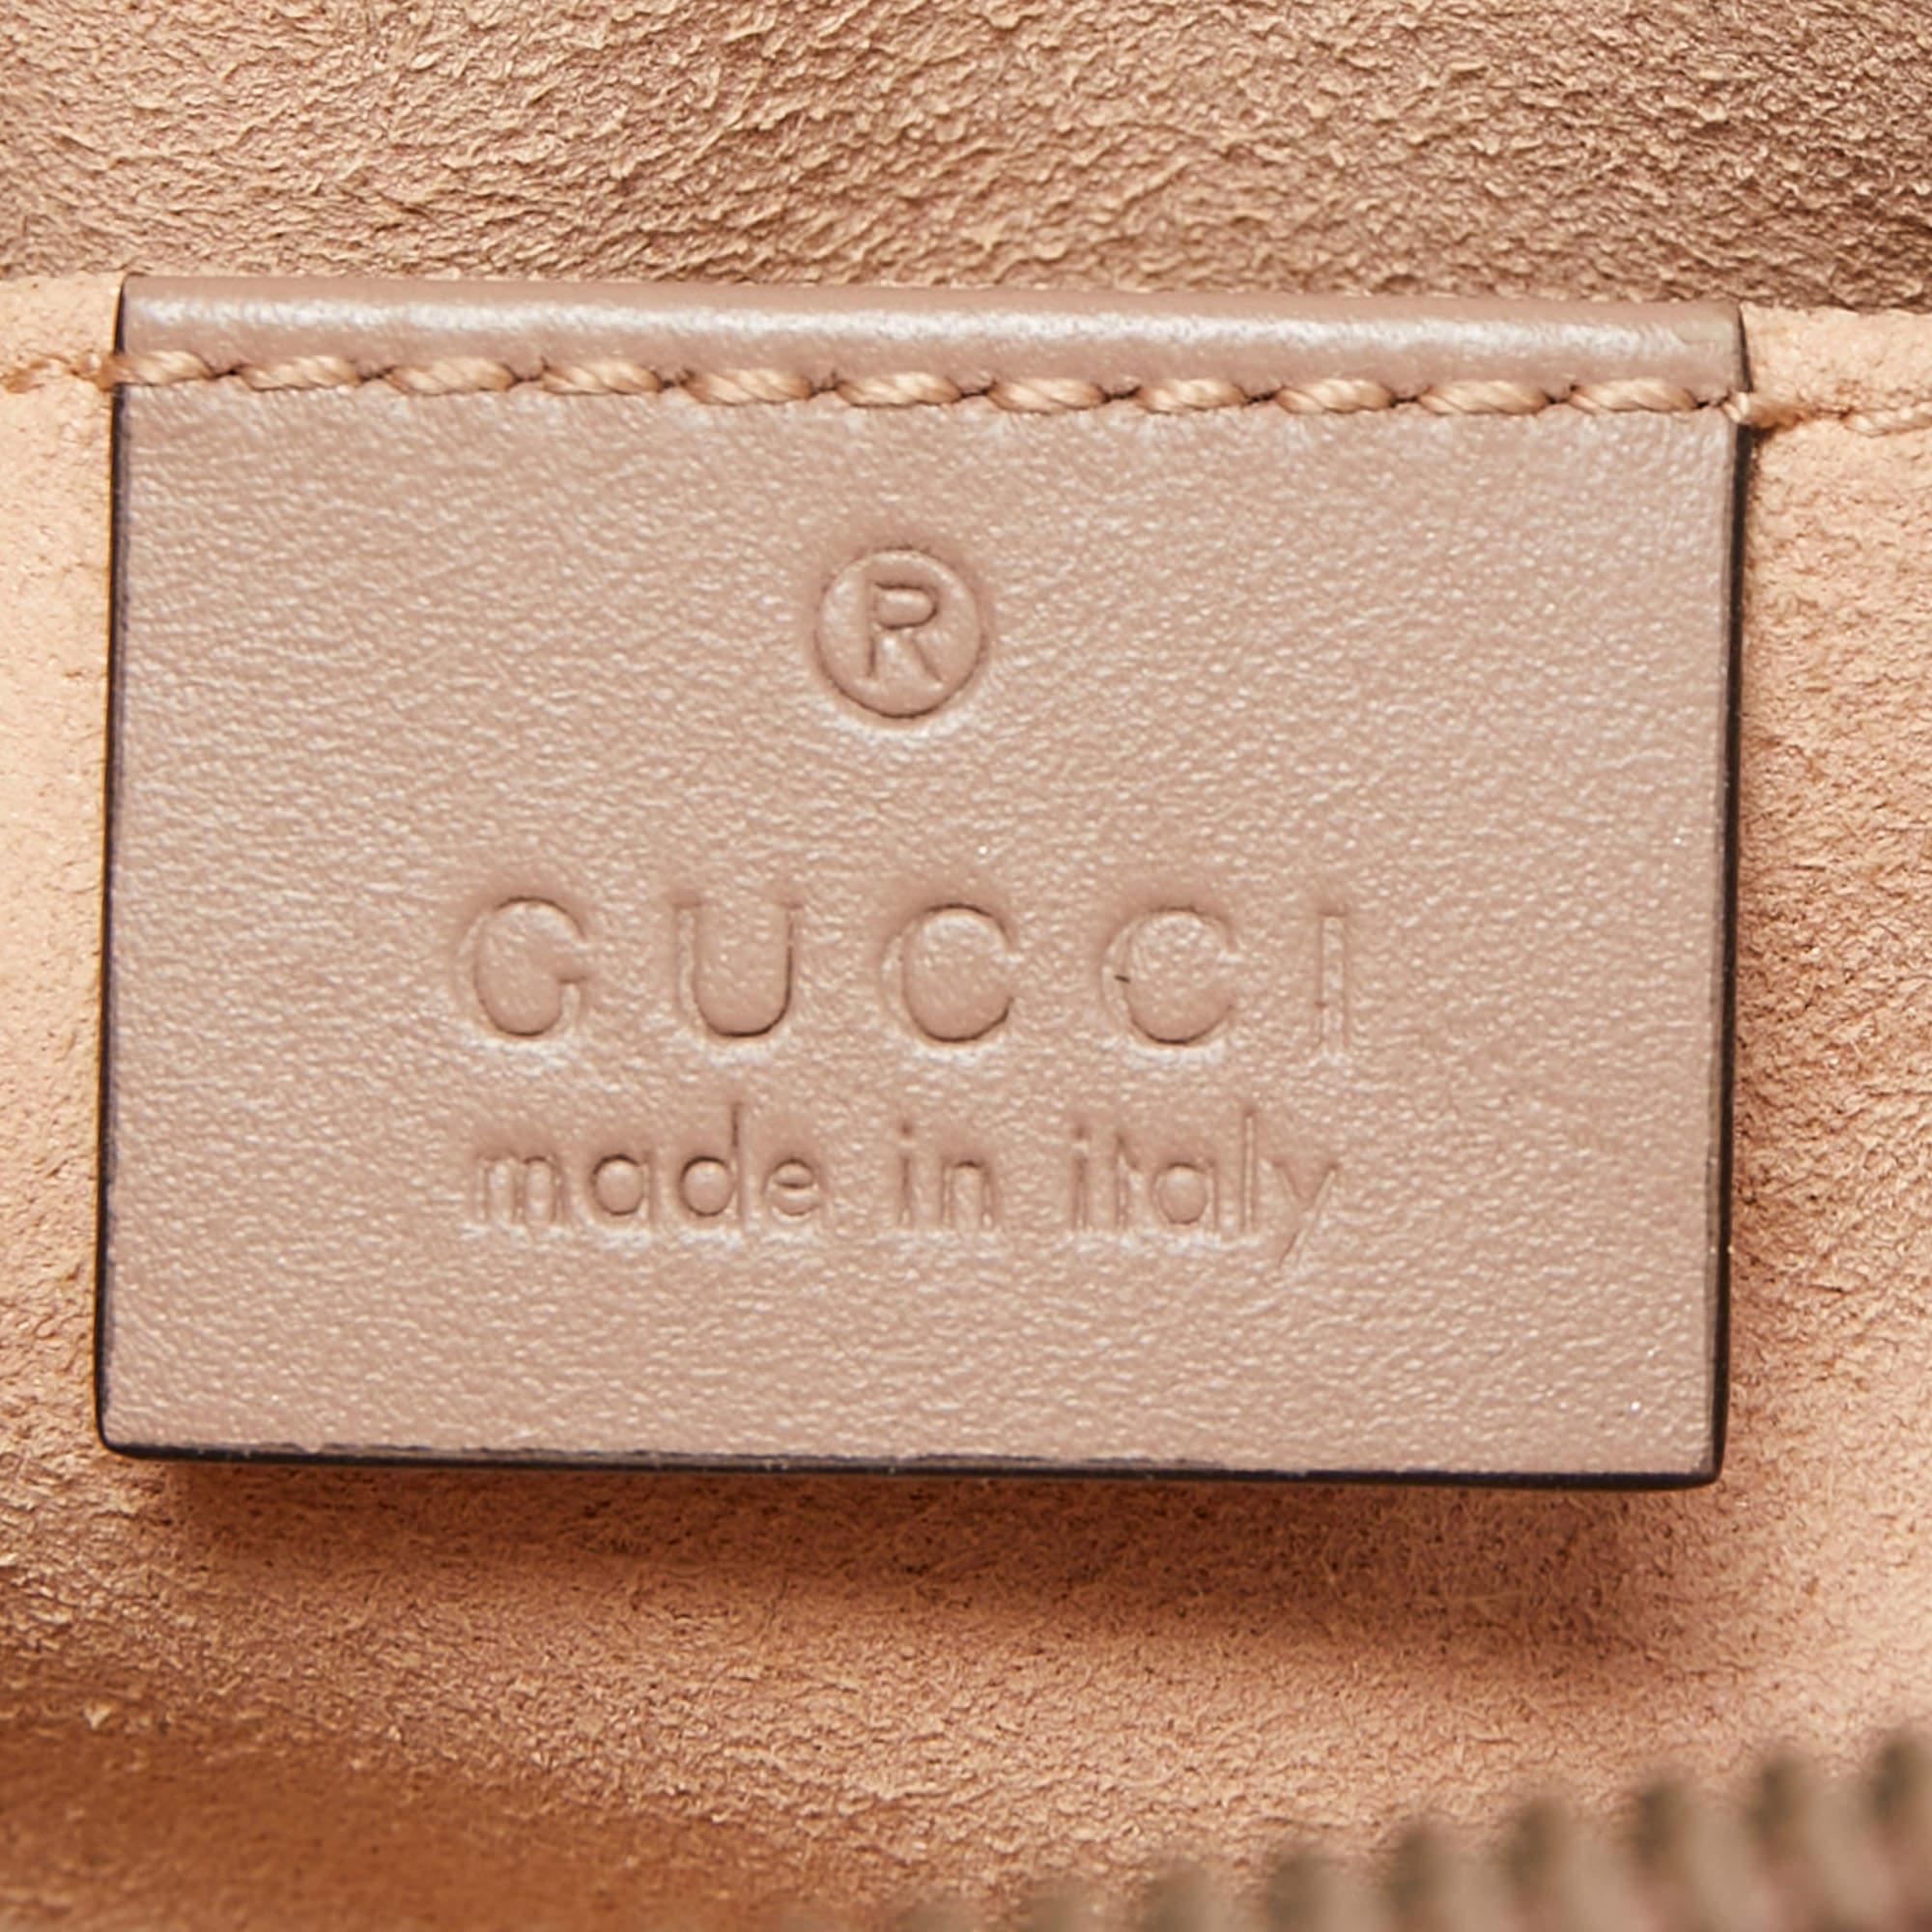 Gucci Beige Matelassé Leather GG Marmont Belt Bag 3